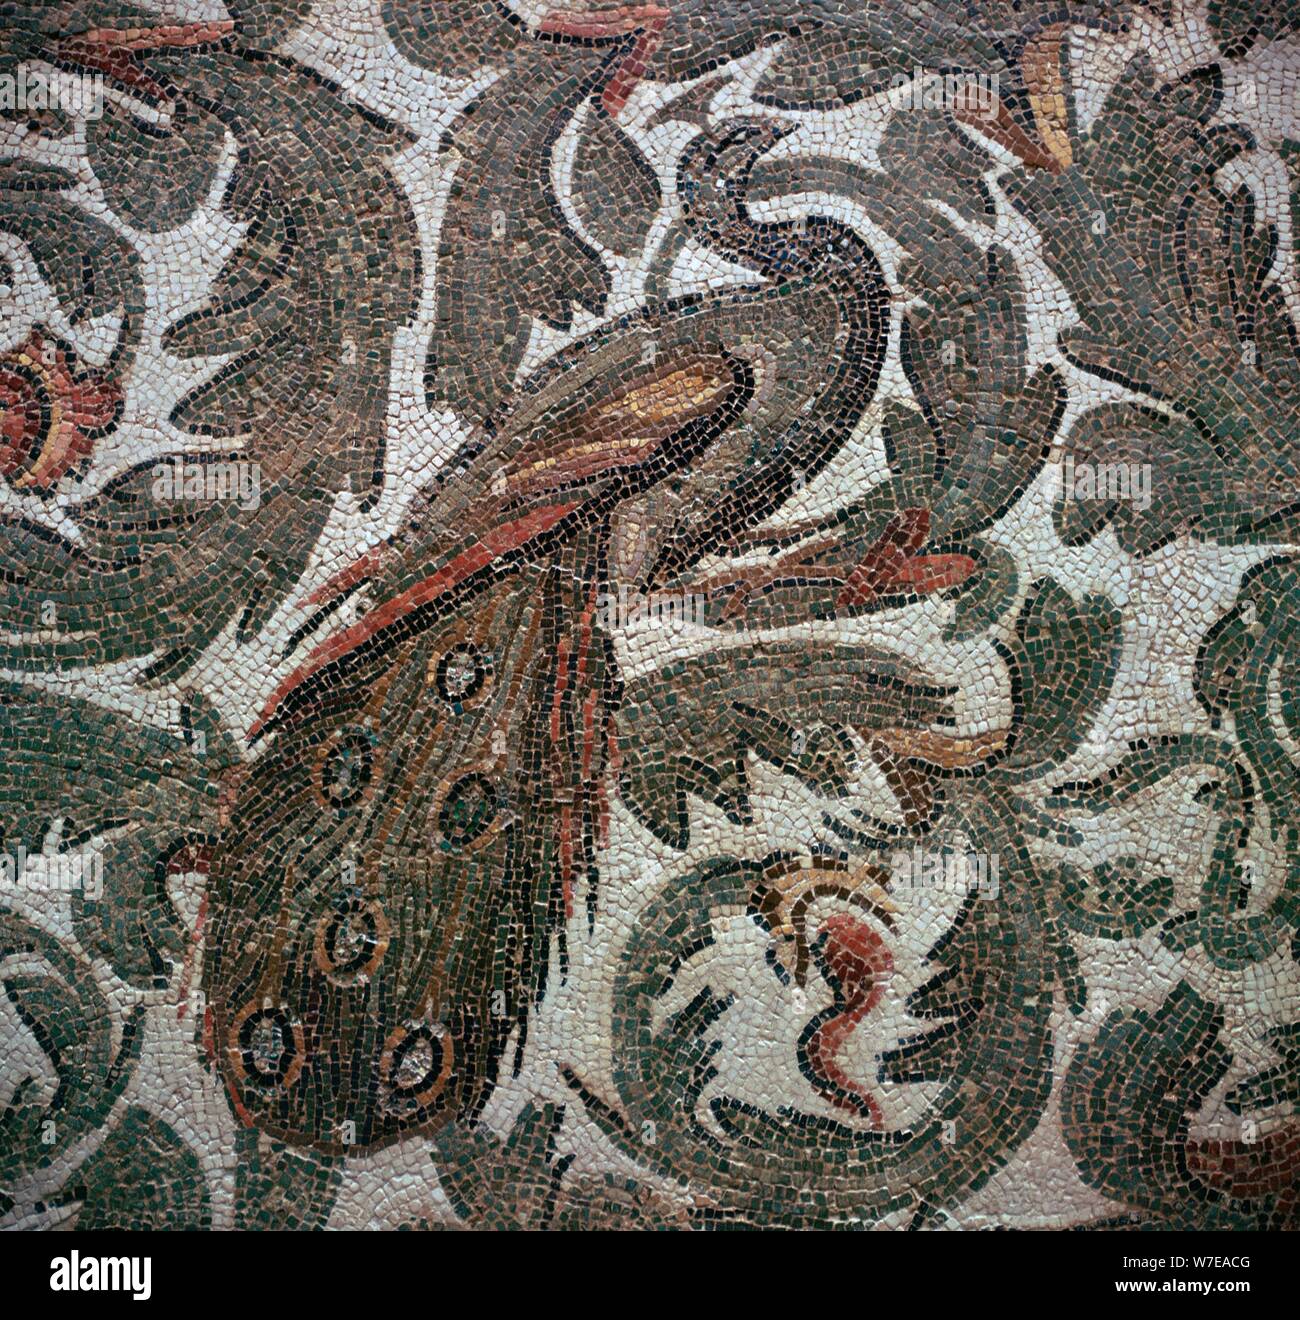 Mosaïque romaine d'un paon dans le feuillage, 3e siècle. Artiste : Inconnu Banque D'Images